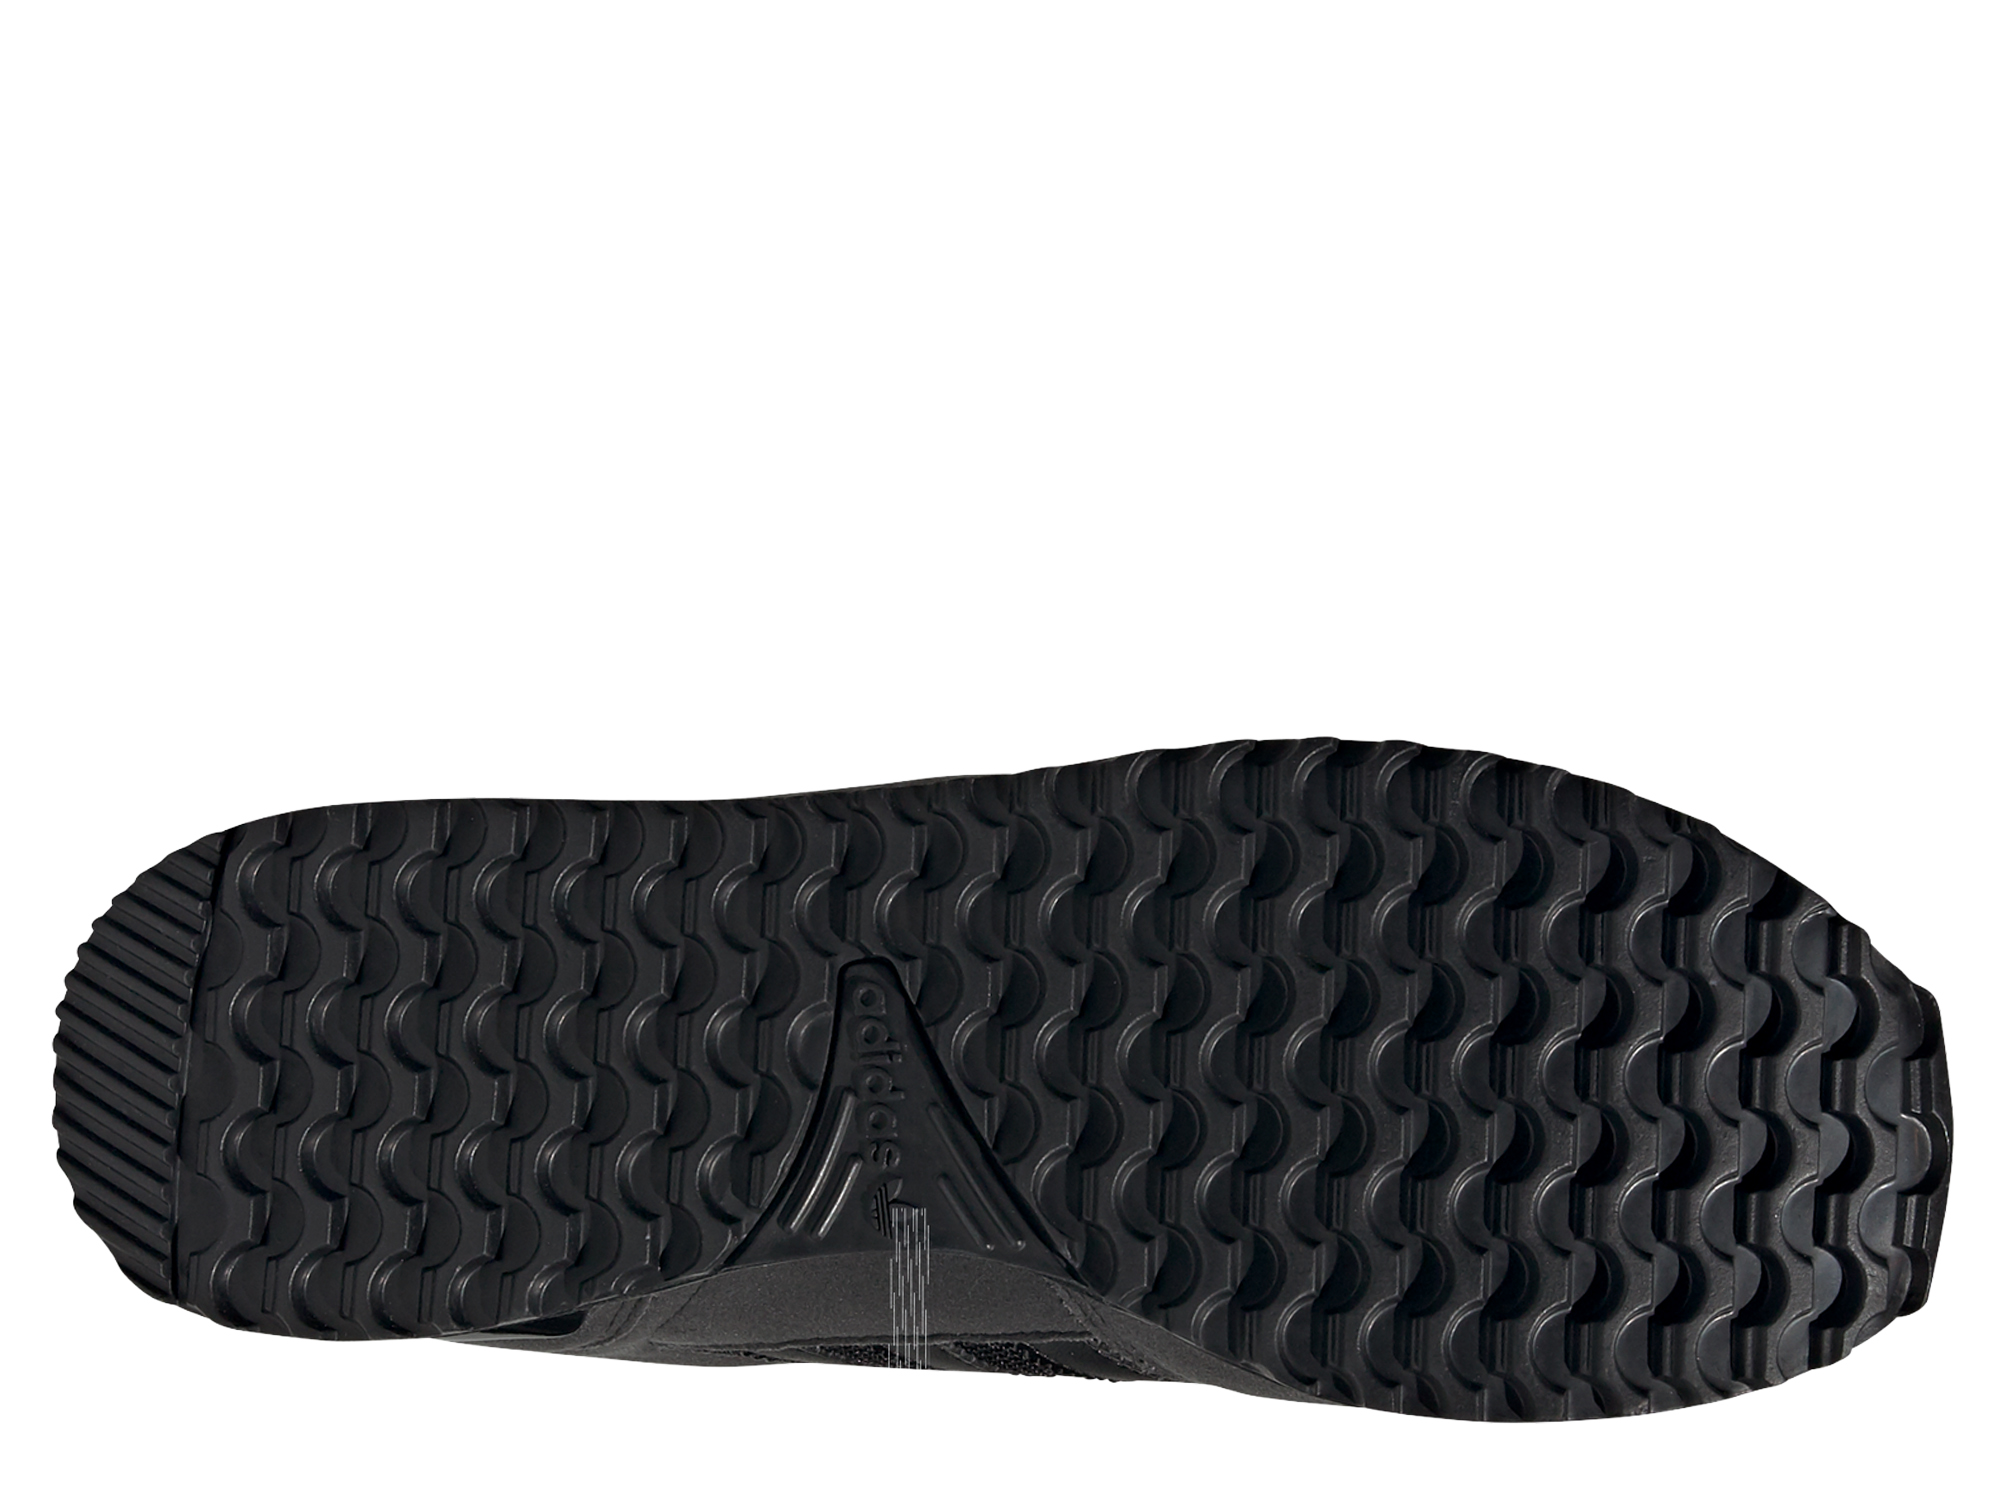 Adidas Originals ZX 700 Herren Sneaker